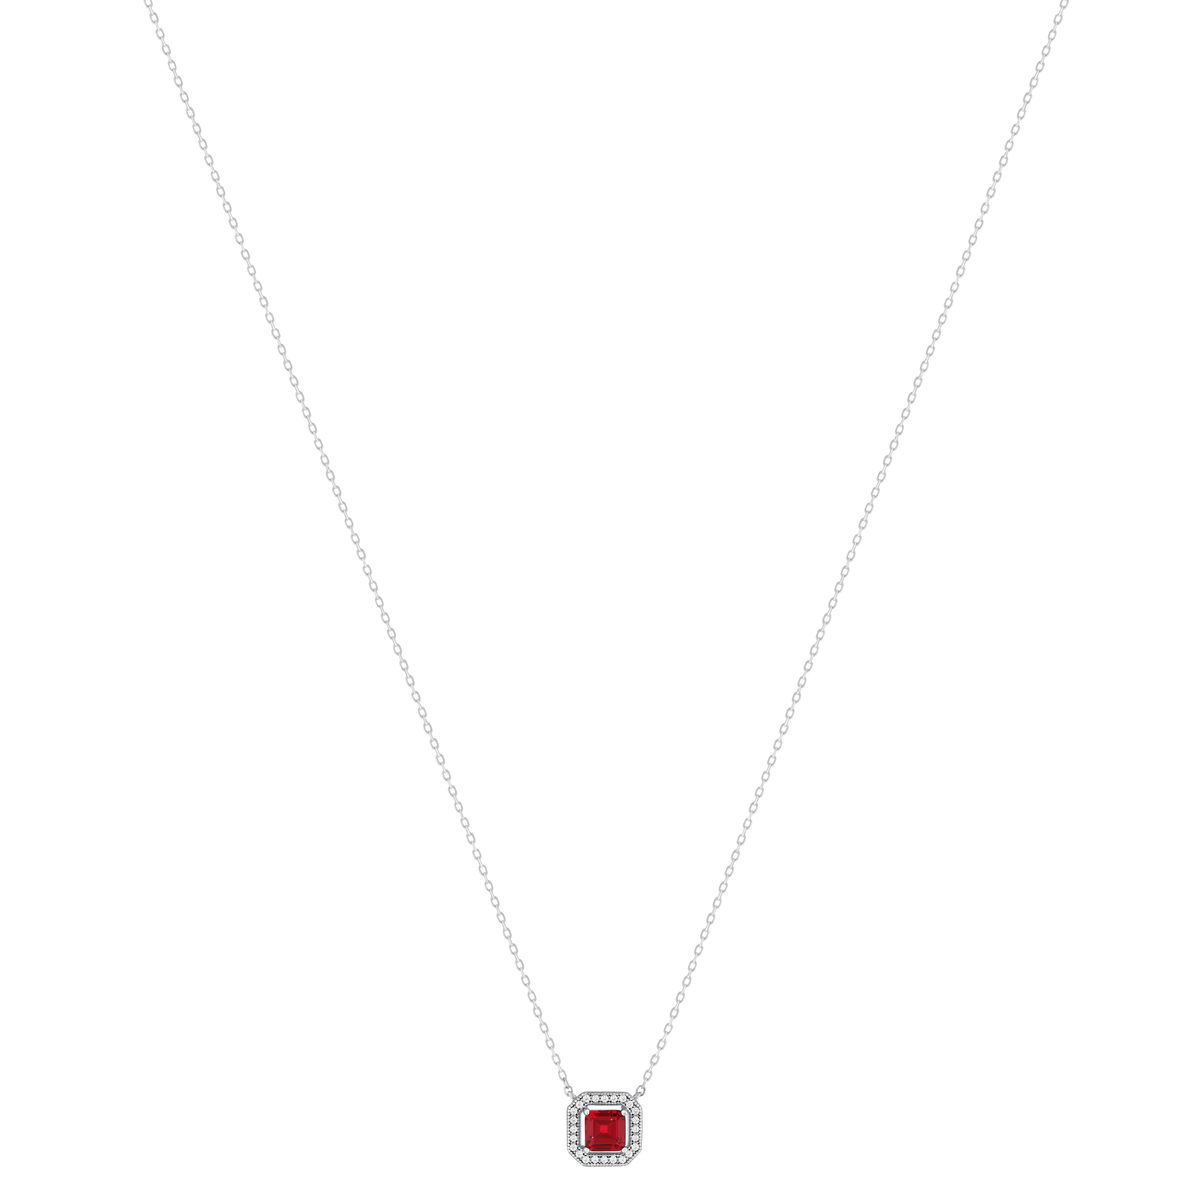 Collier argent 925 pierre synthétique rouge et zirconias 45 cm - vue 2